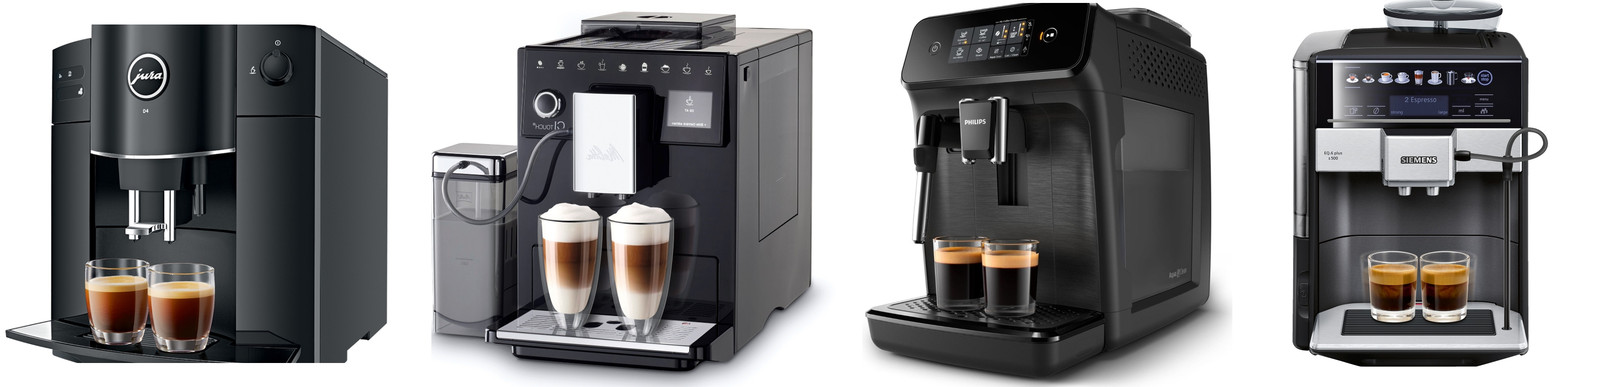 Politie katje Sandalen Welke espressomachines zijn je geld waard en waarop moet je letten bij de  aankoop? Koffie-expert geeft advies | Foto | hln.be